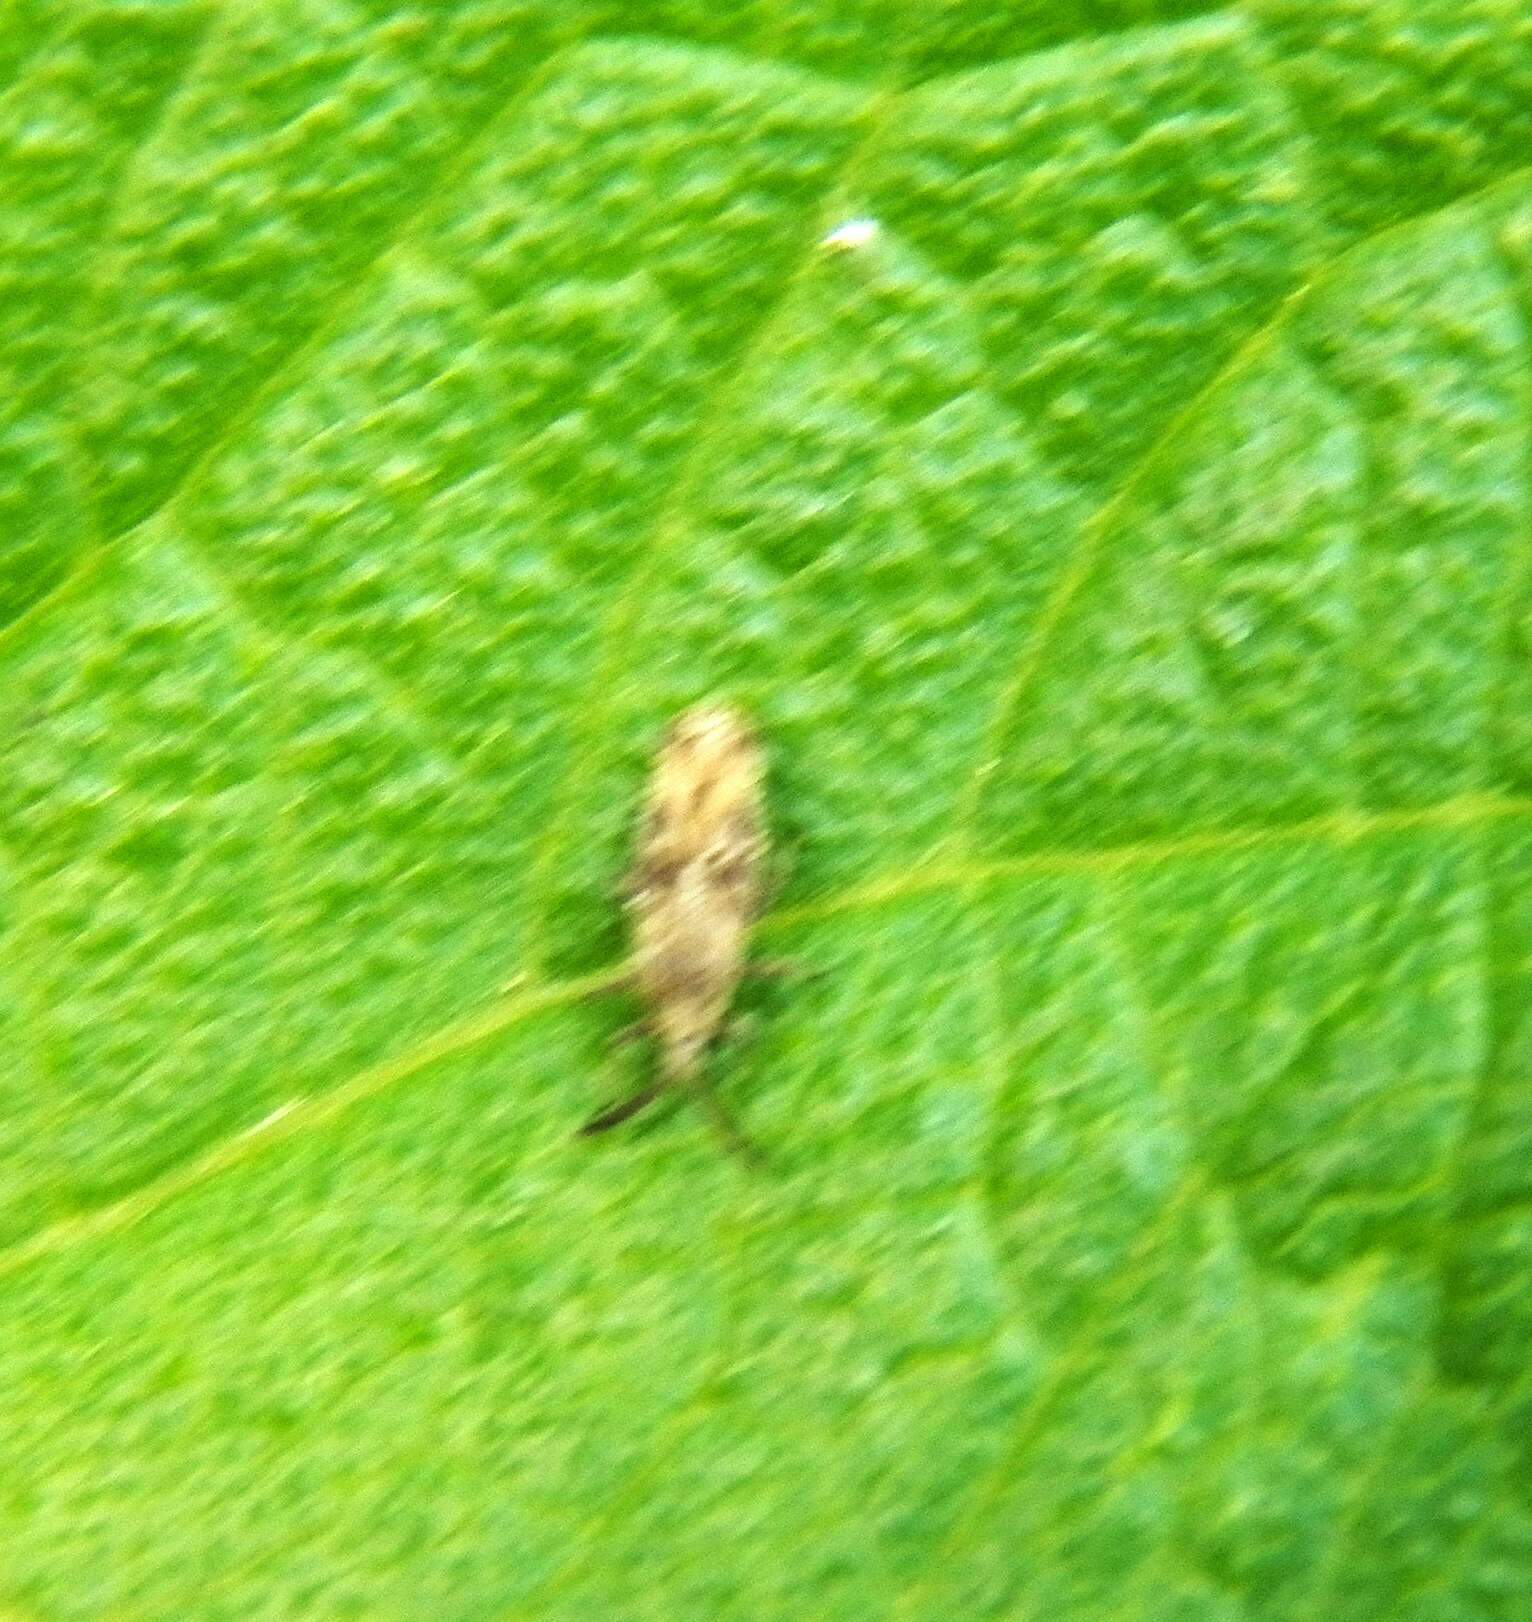 Image of Lantana Lace Bug